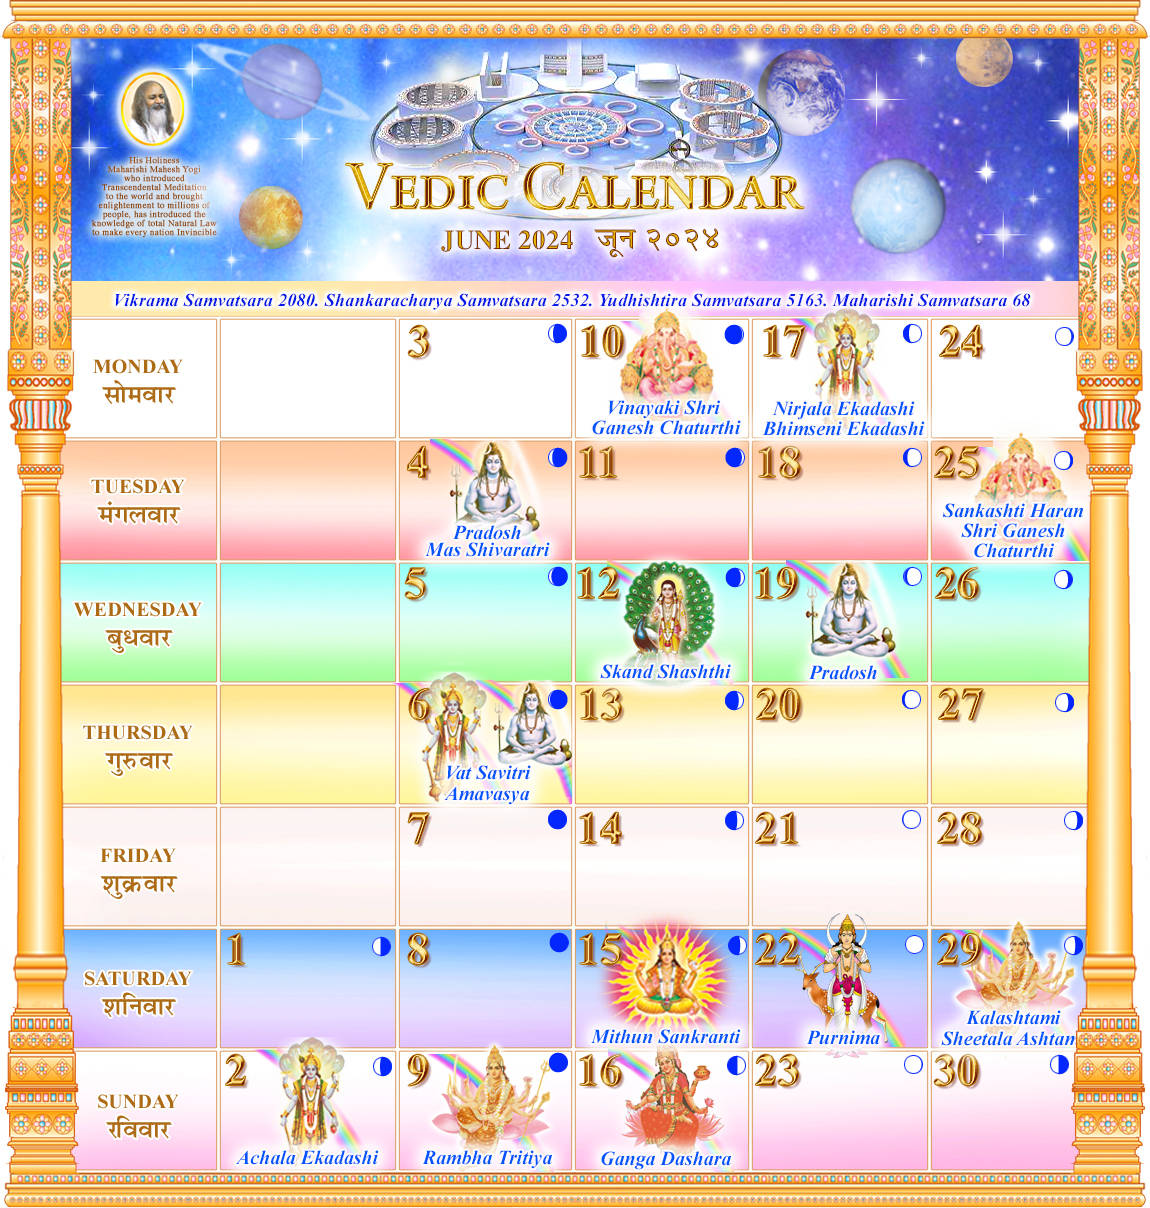 Vedic Calendar June